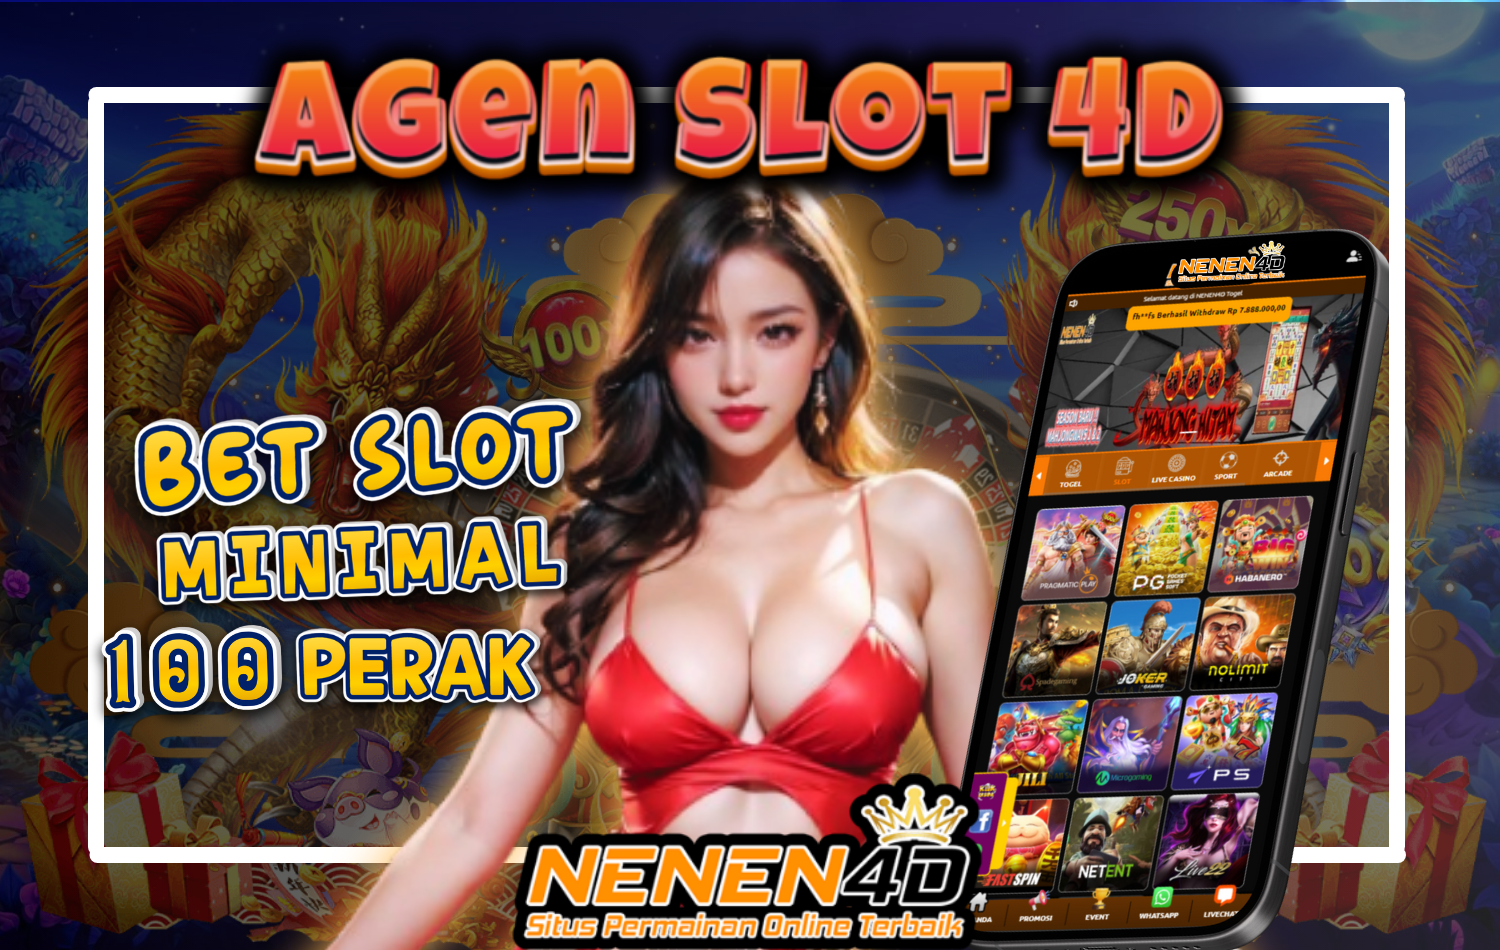 NENEN4D - Agen Slot 4D Situs Resmi Toto Togel Pay4D Mudah Maxwin